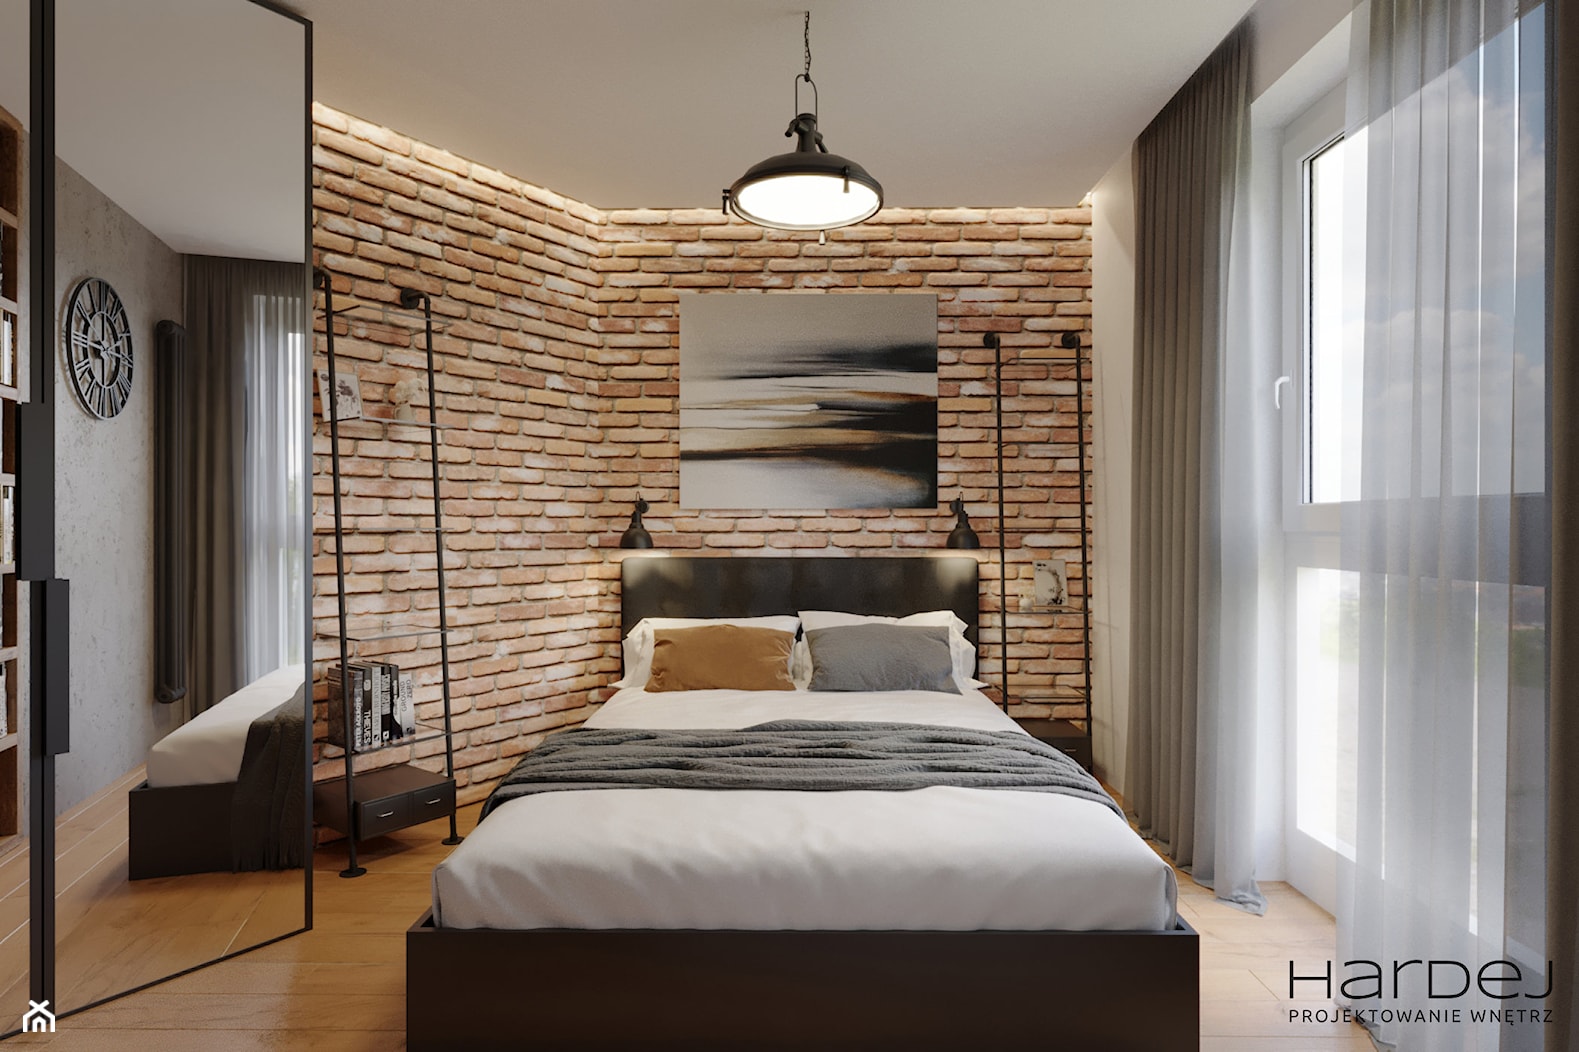 mała sypialnia w loftowo-industrialnym klimacie - zdjęcie od Monika Hardej Architekt - Homebook